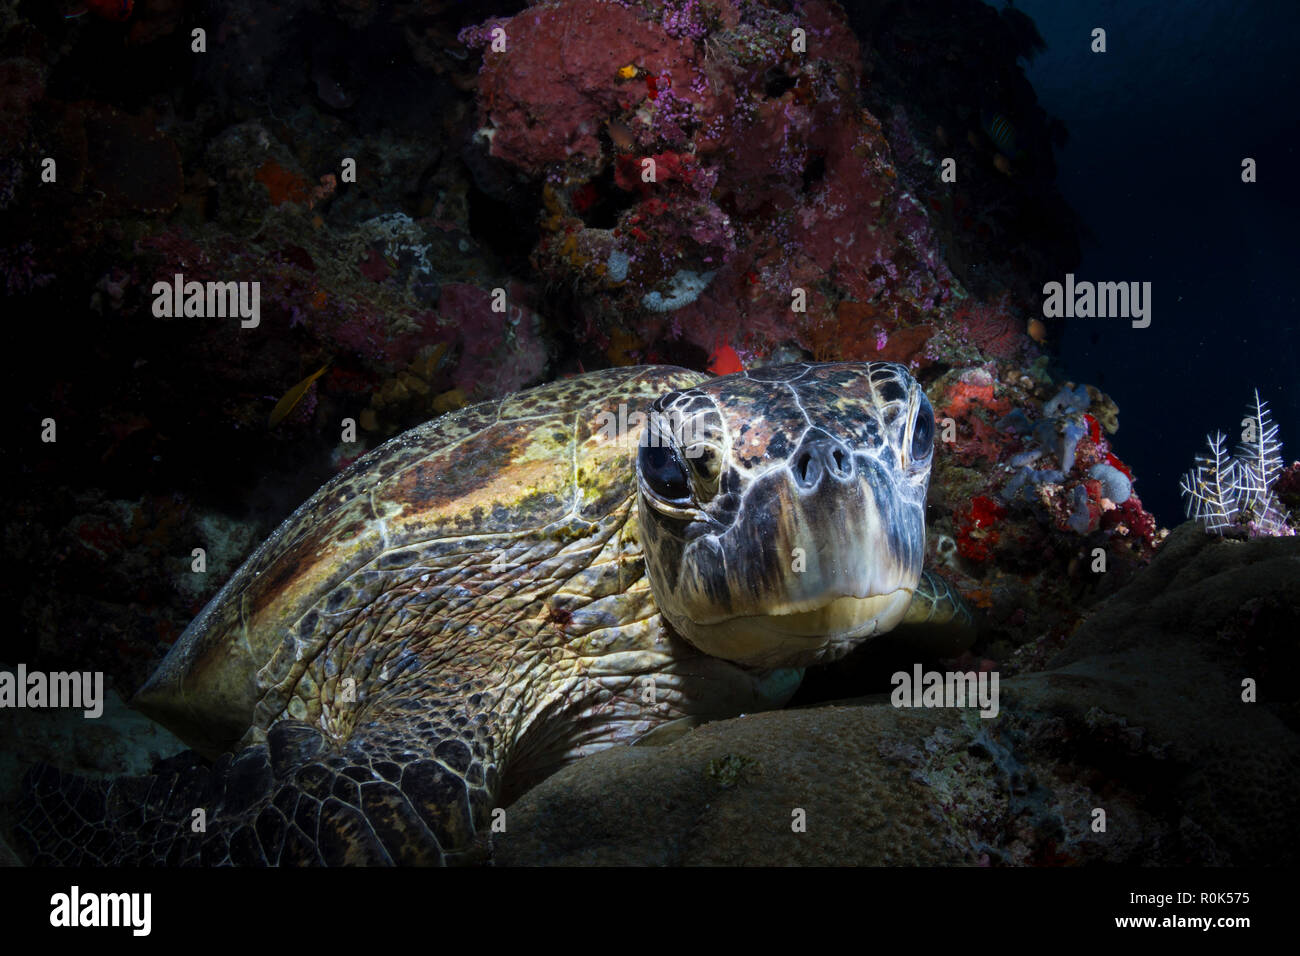 Green sea turtle looking at the camera, Sipadan, Malaysia. Stock Photo